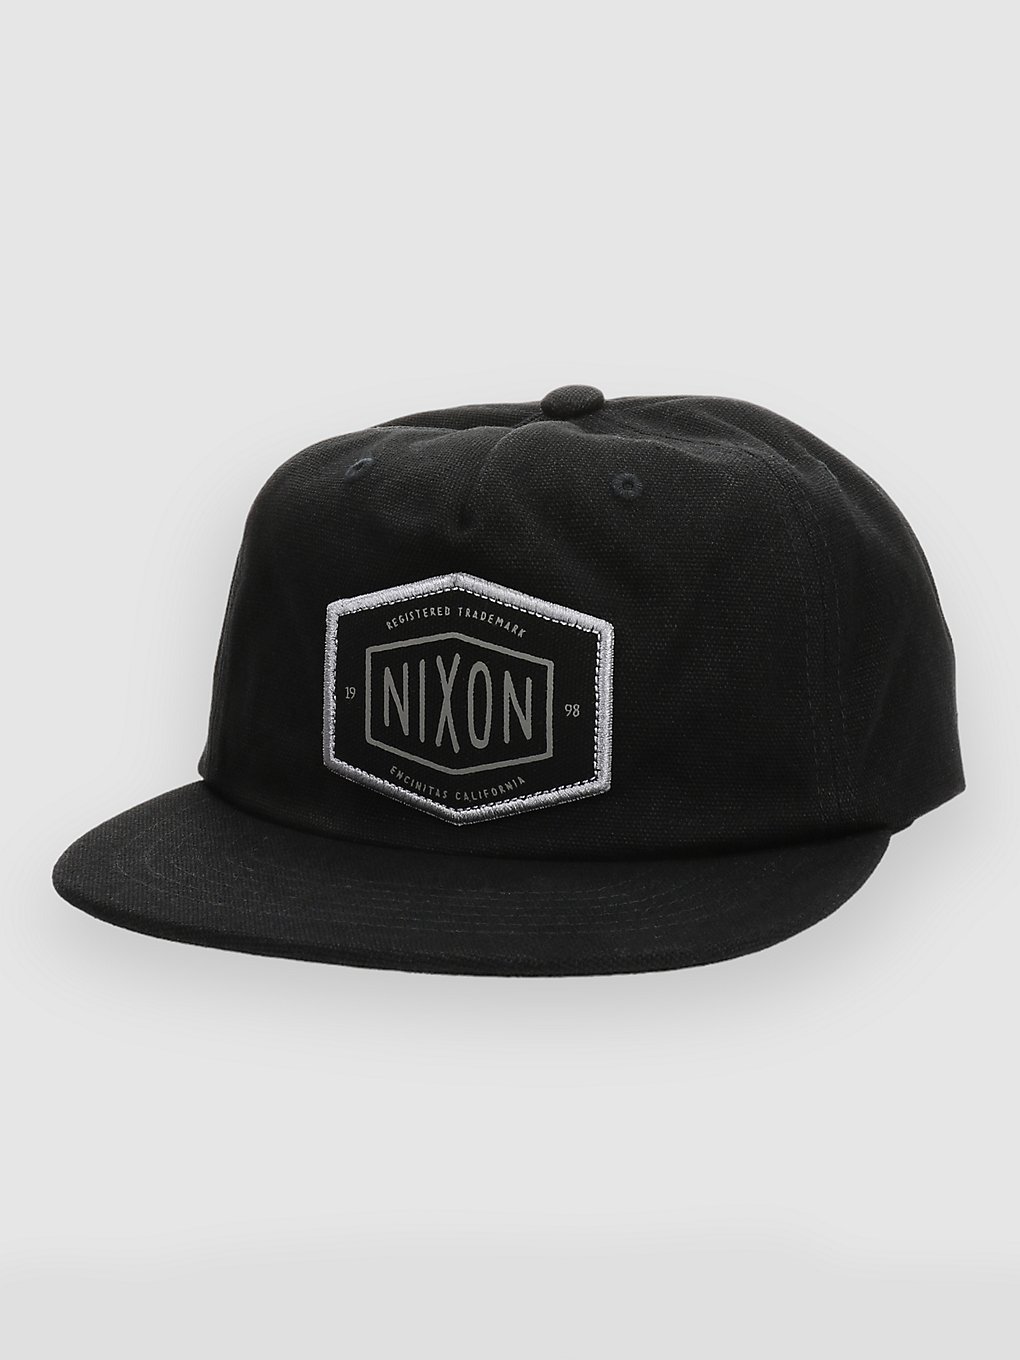 Nixon Anderson Strapback Cap black kaufen